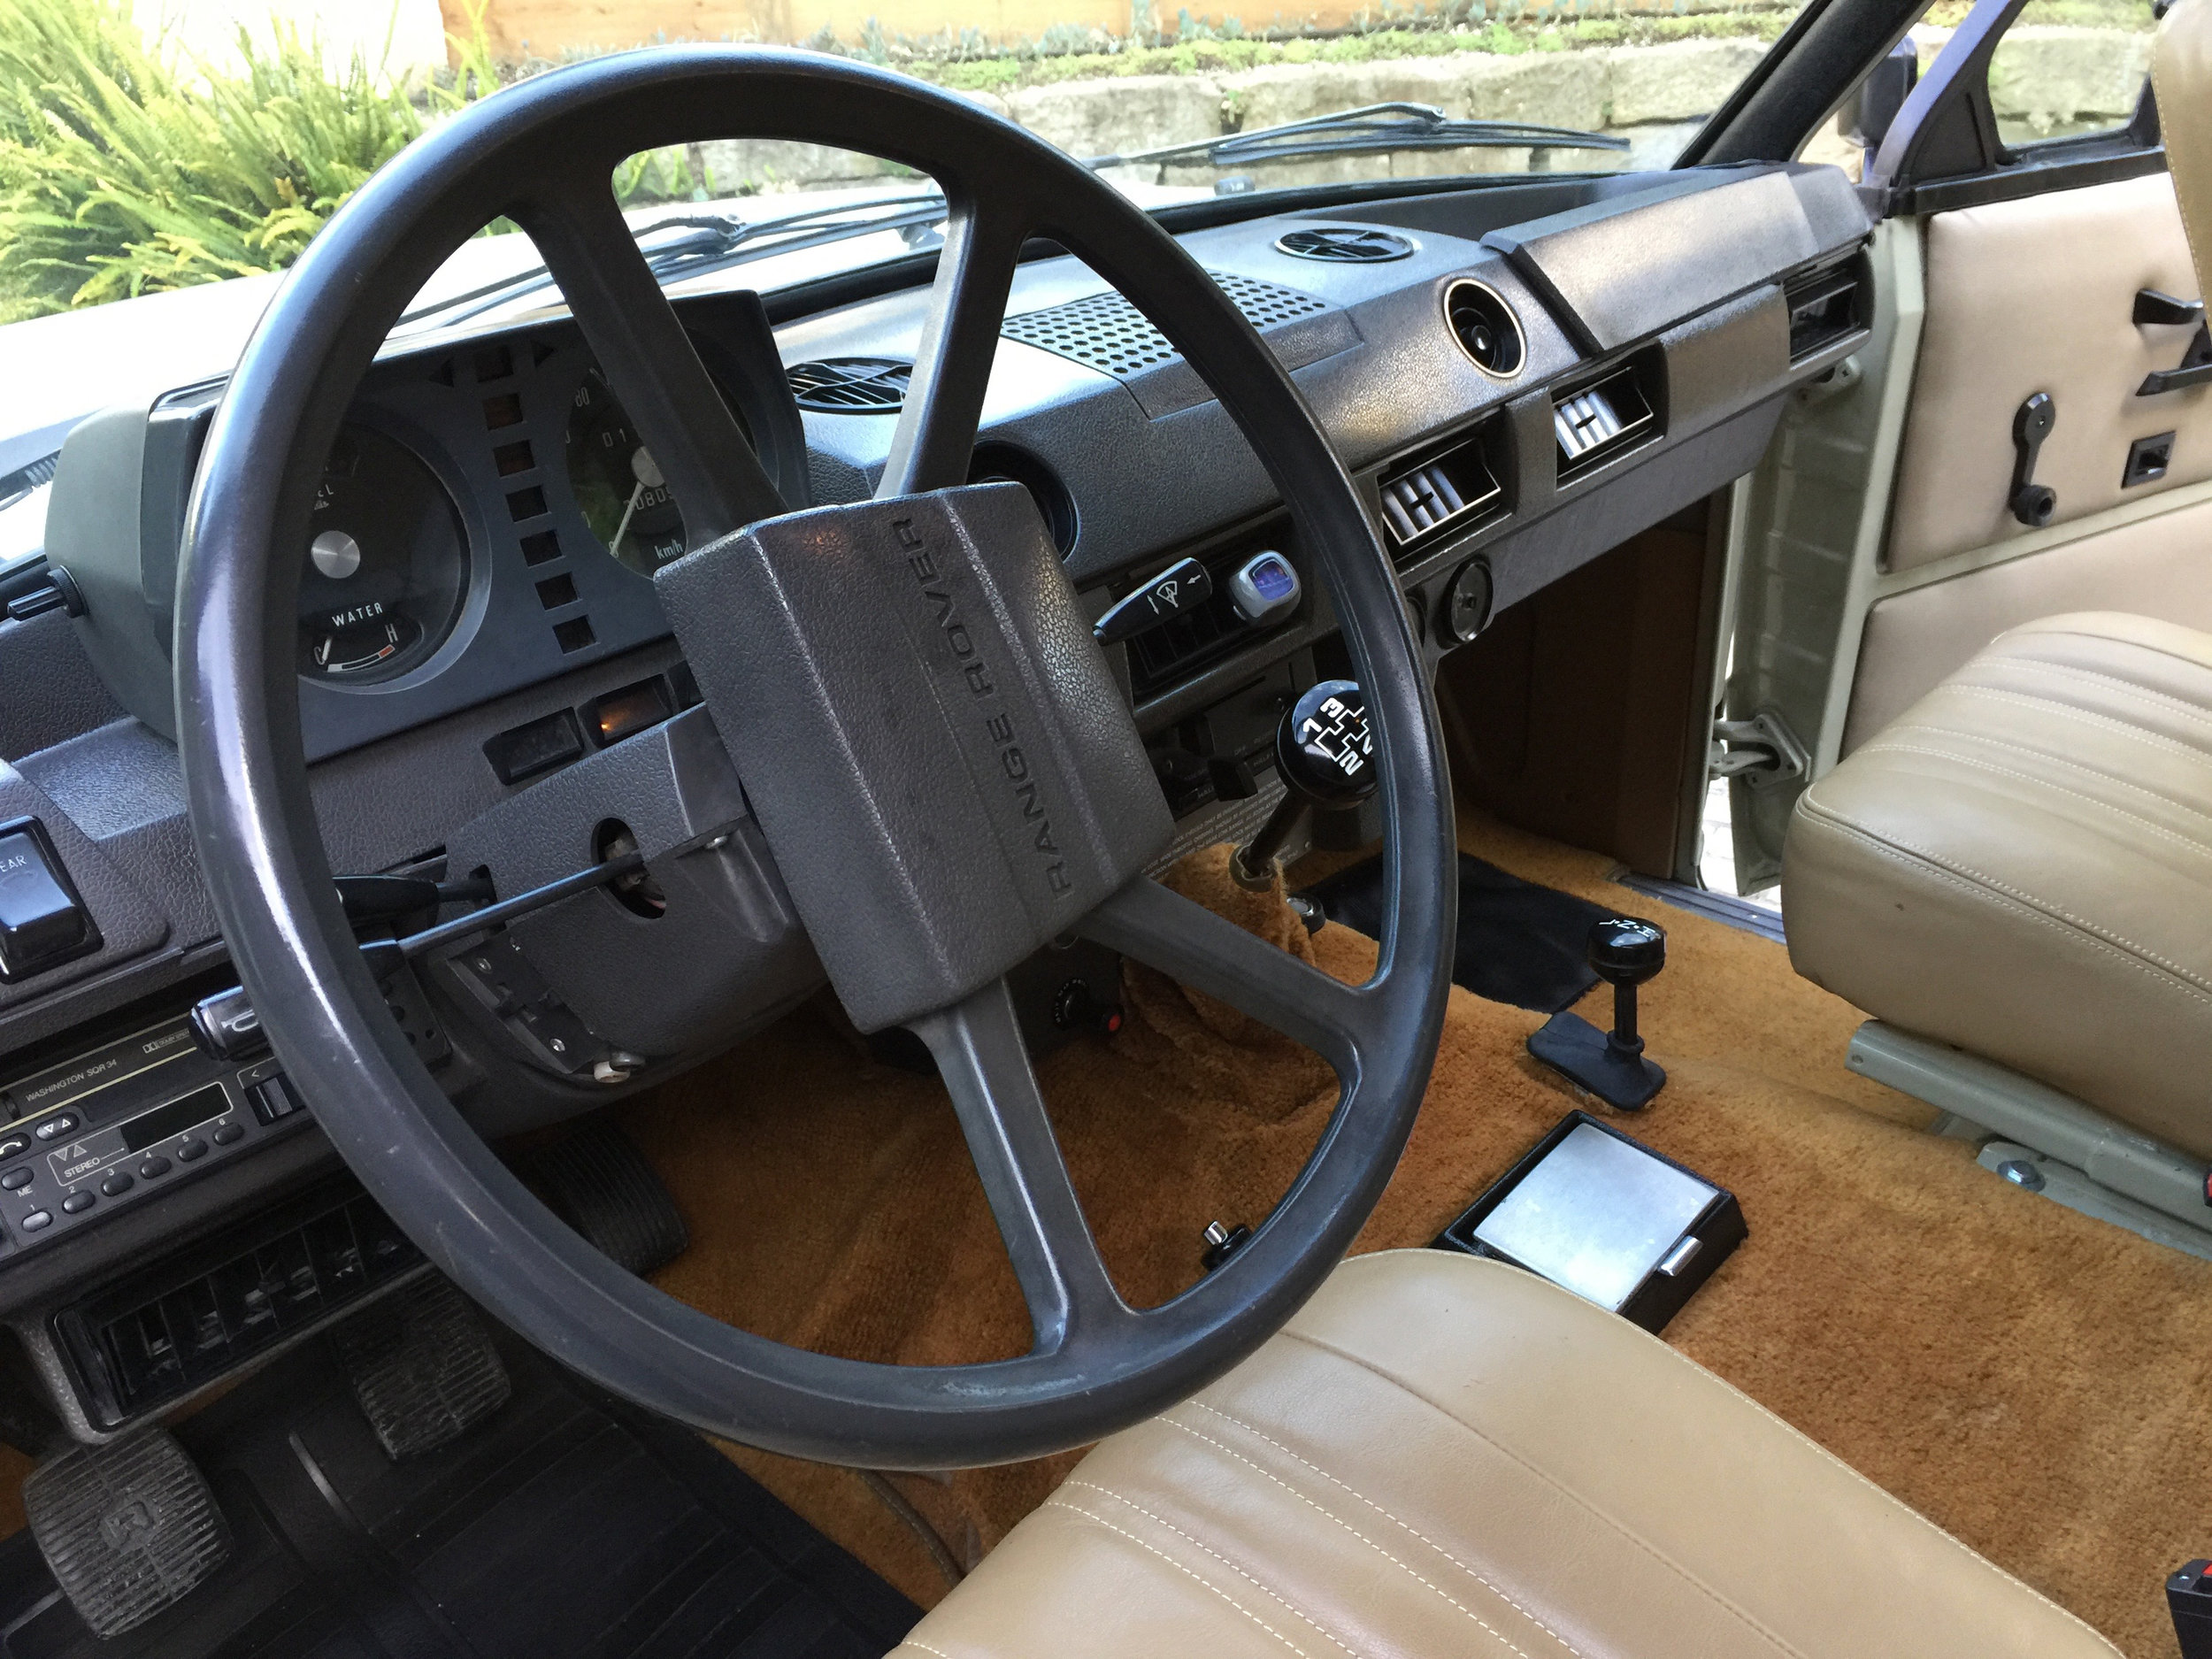 1981 Range Rover 2 Door Sold Vintage Cruisers